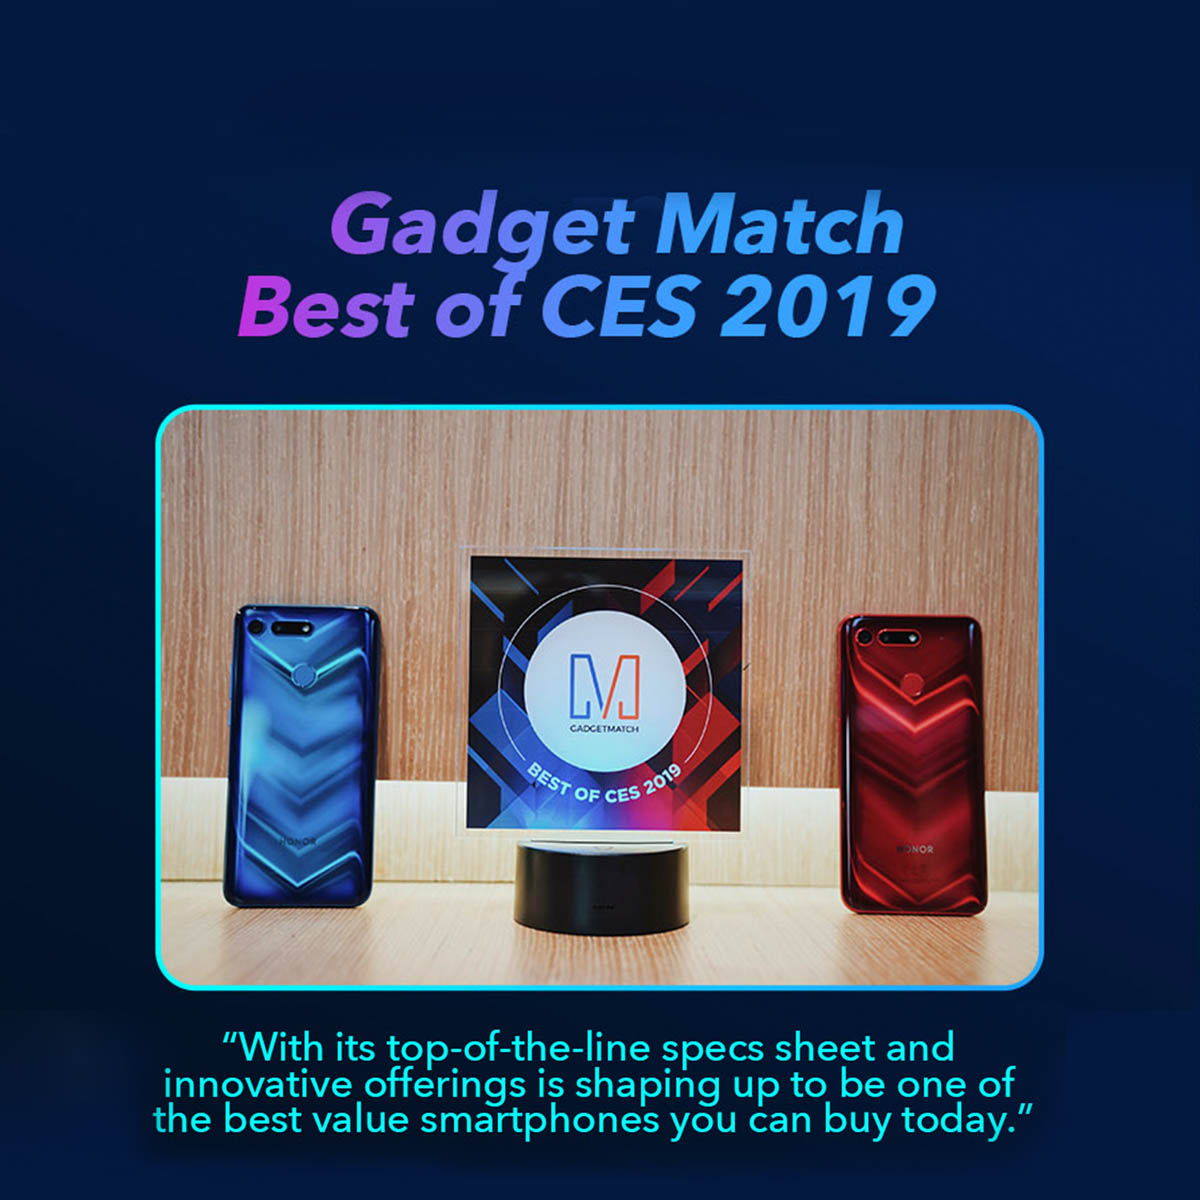 Gadget Match